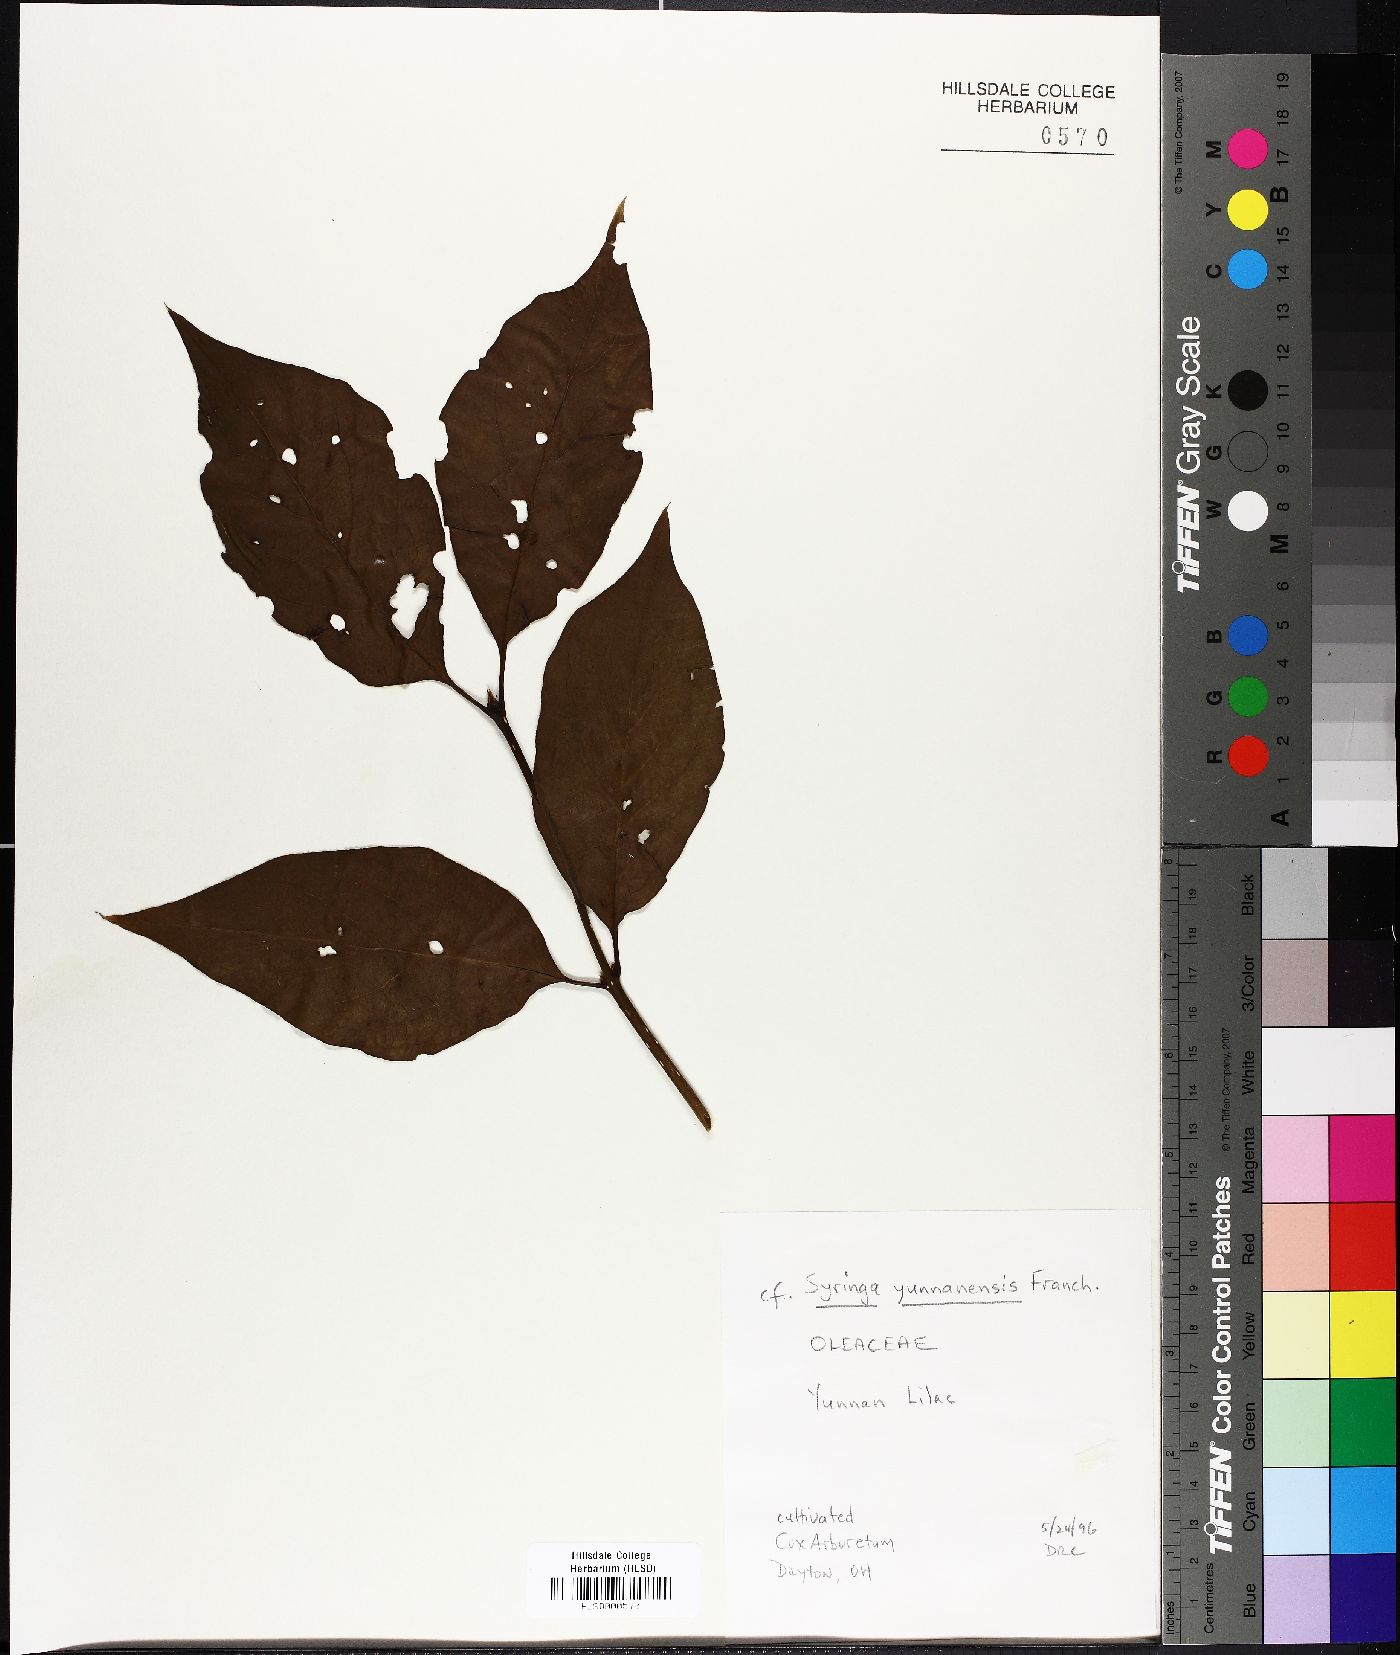 Syringa tomentella subsp. yunnanensis image